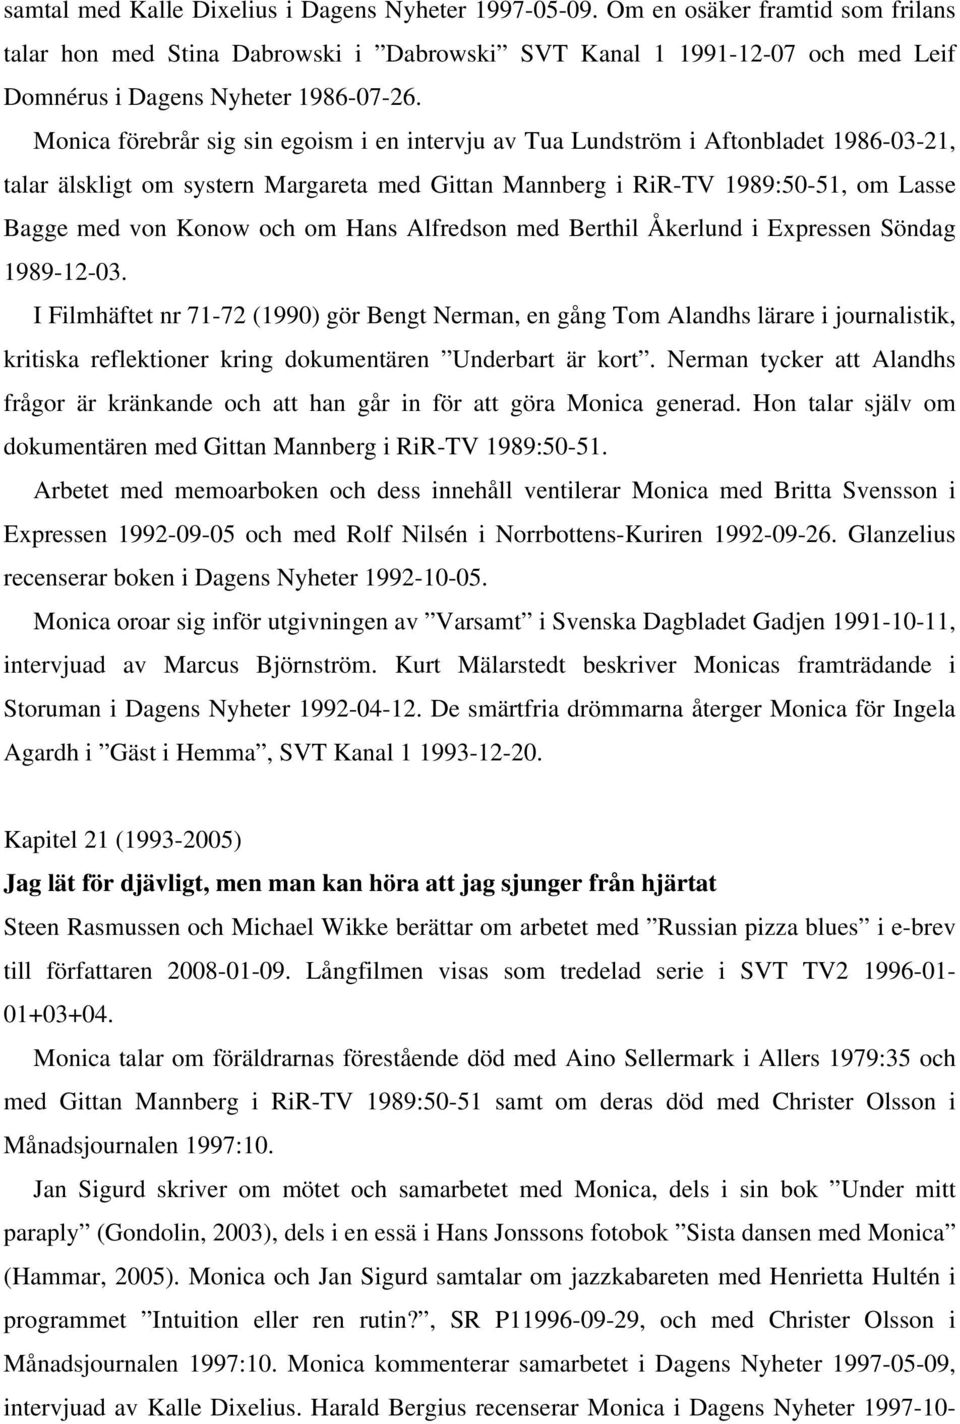 Monica förebrår sig sin egoism i en intervju av Tua Lundström i Aftonbladet 1986-03-21, talar älskligt om systern Margareta med Gittan Mannberg i RiR-TV 1989:50-51, om Lasse Bagge med von Konow och